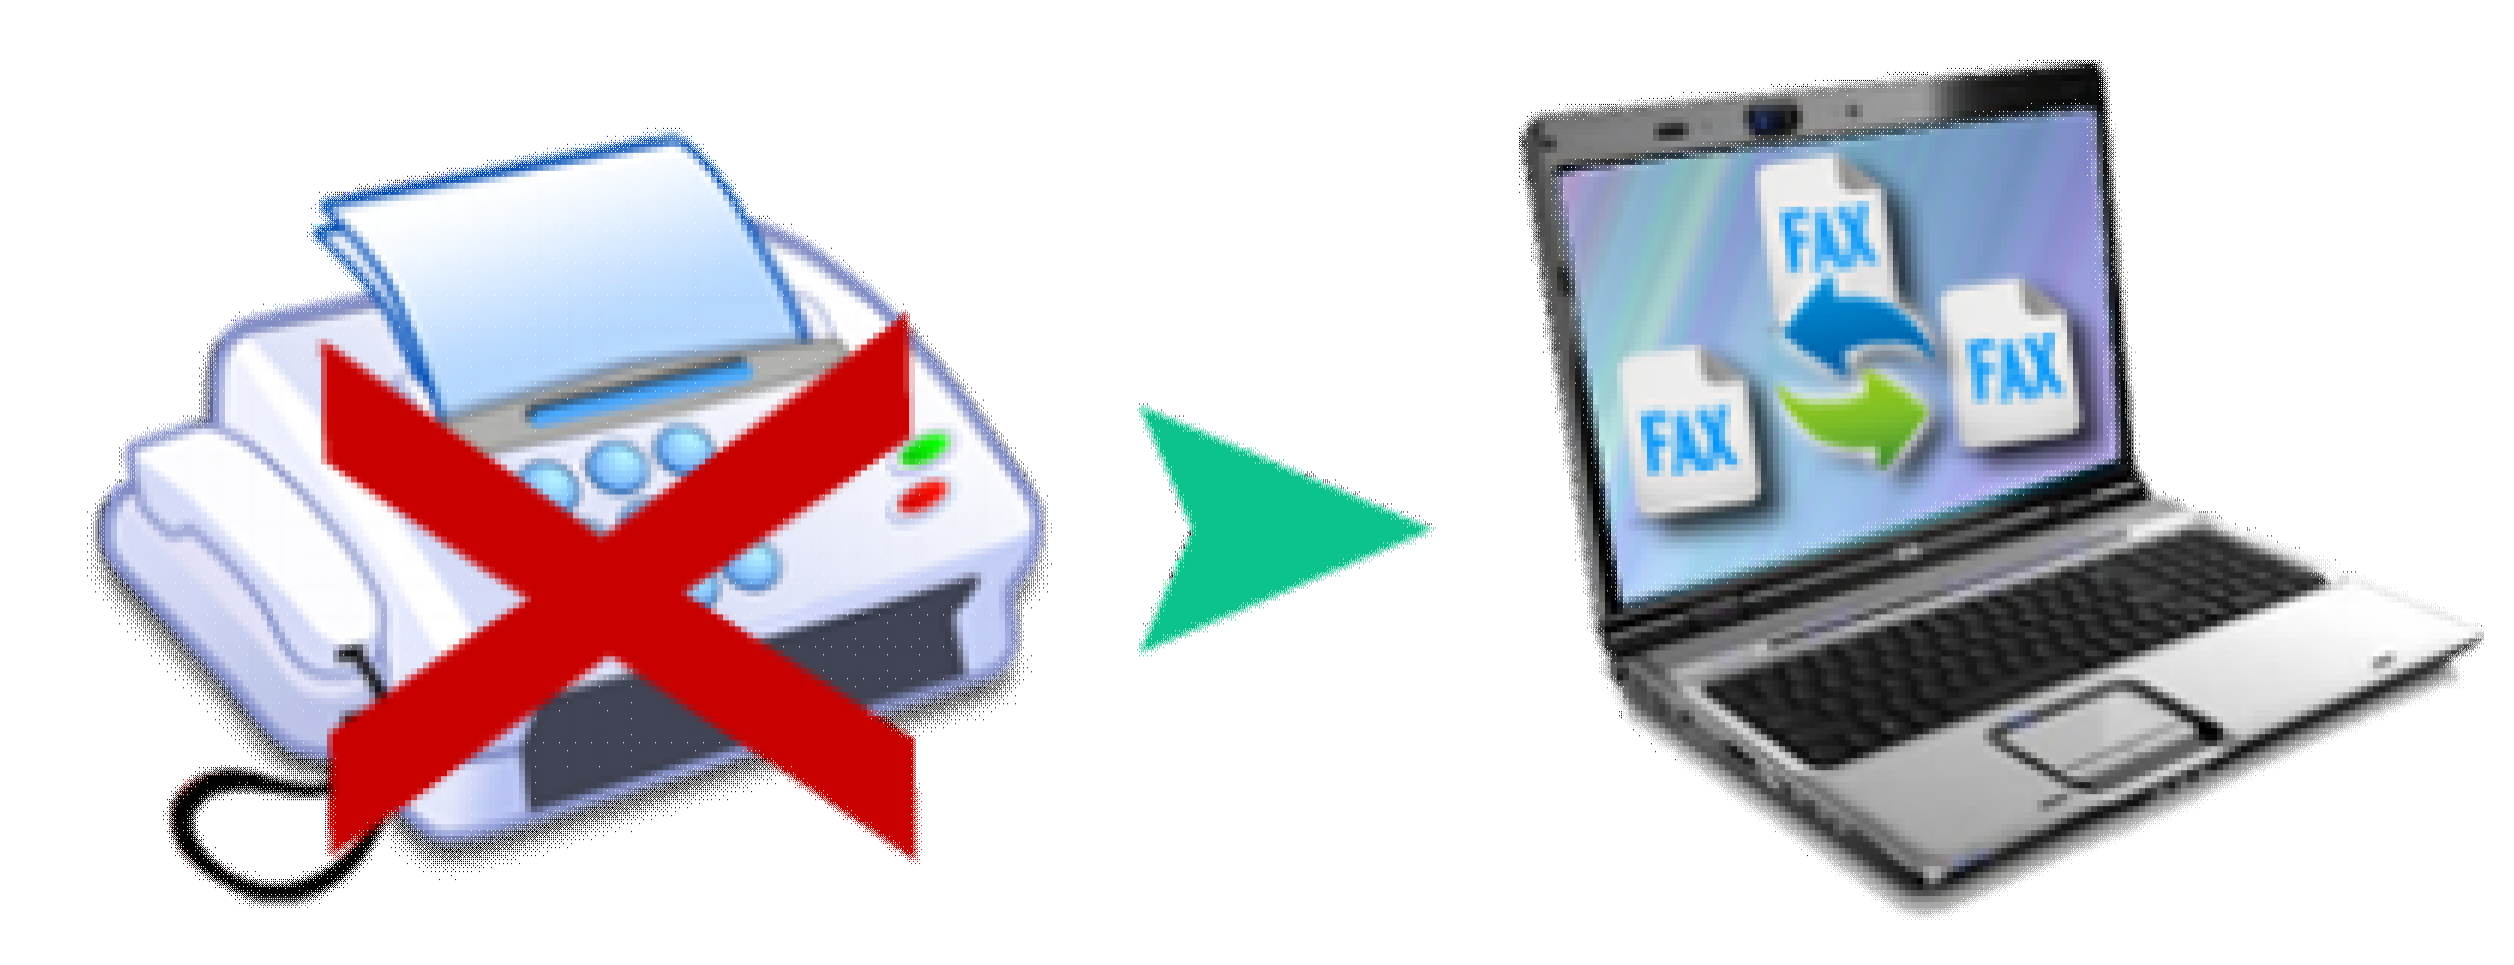 Servicio de Fax to mail Nuestro servicio de Faxtomail, permite enviar y recibir faxes desde su panel de control Online, al registrarse en nuestra Web, RecibirFax.